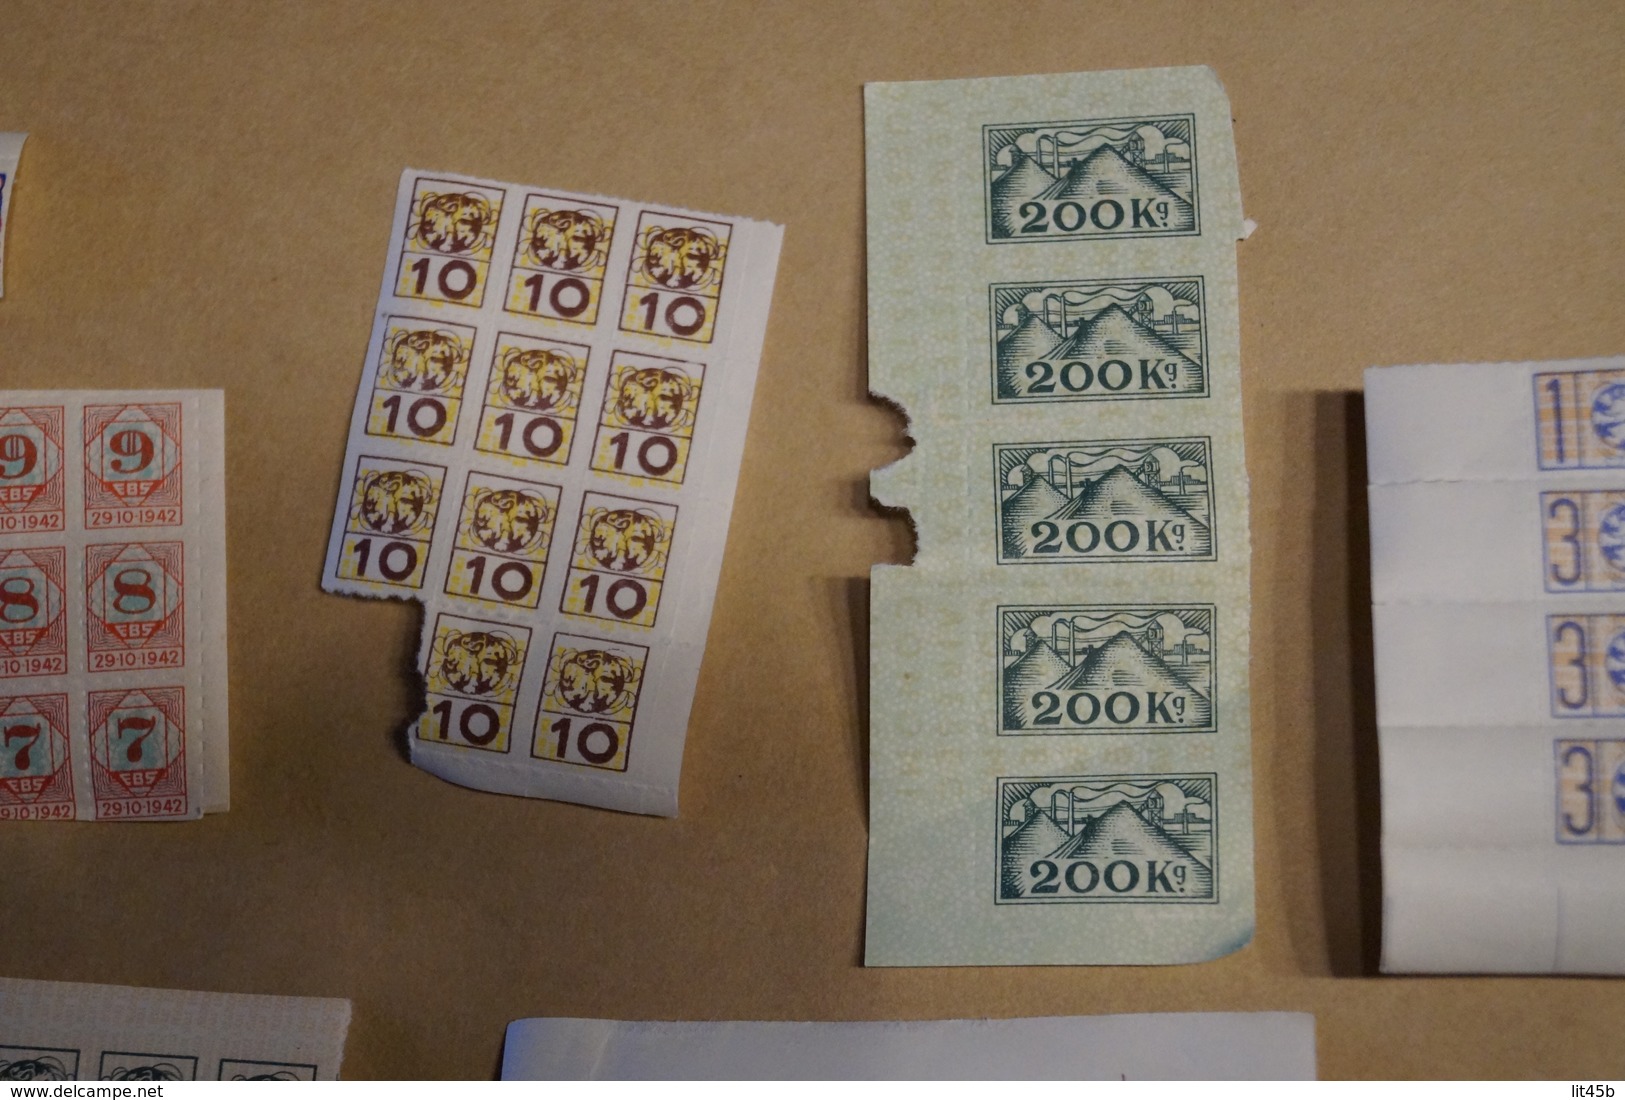 lot important de timbres de ravitaillement,1940-1945,originaux,pour collection